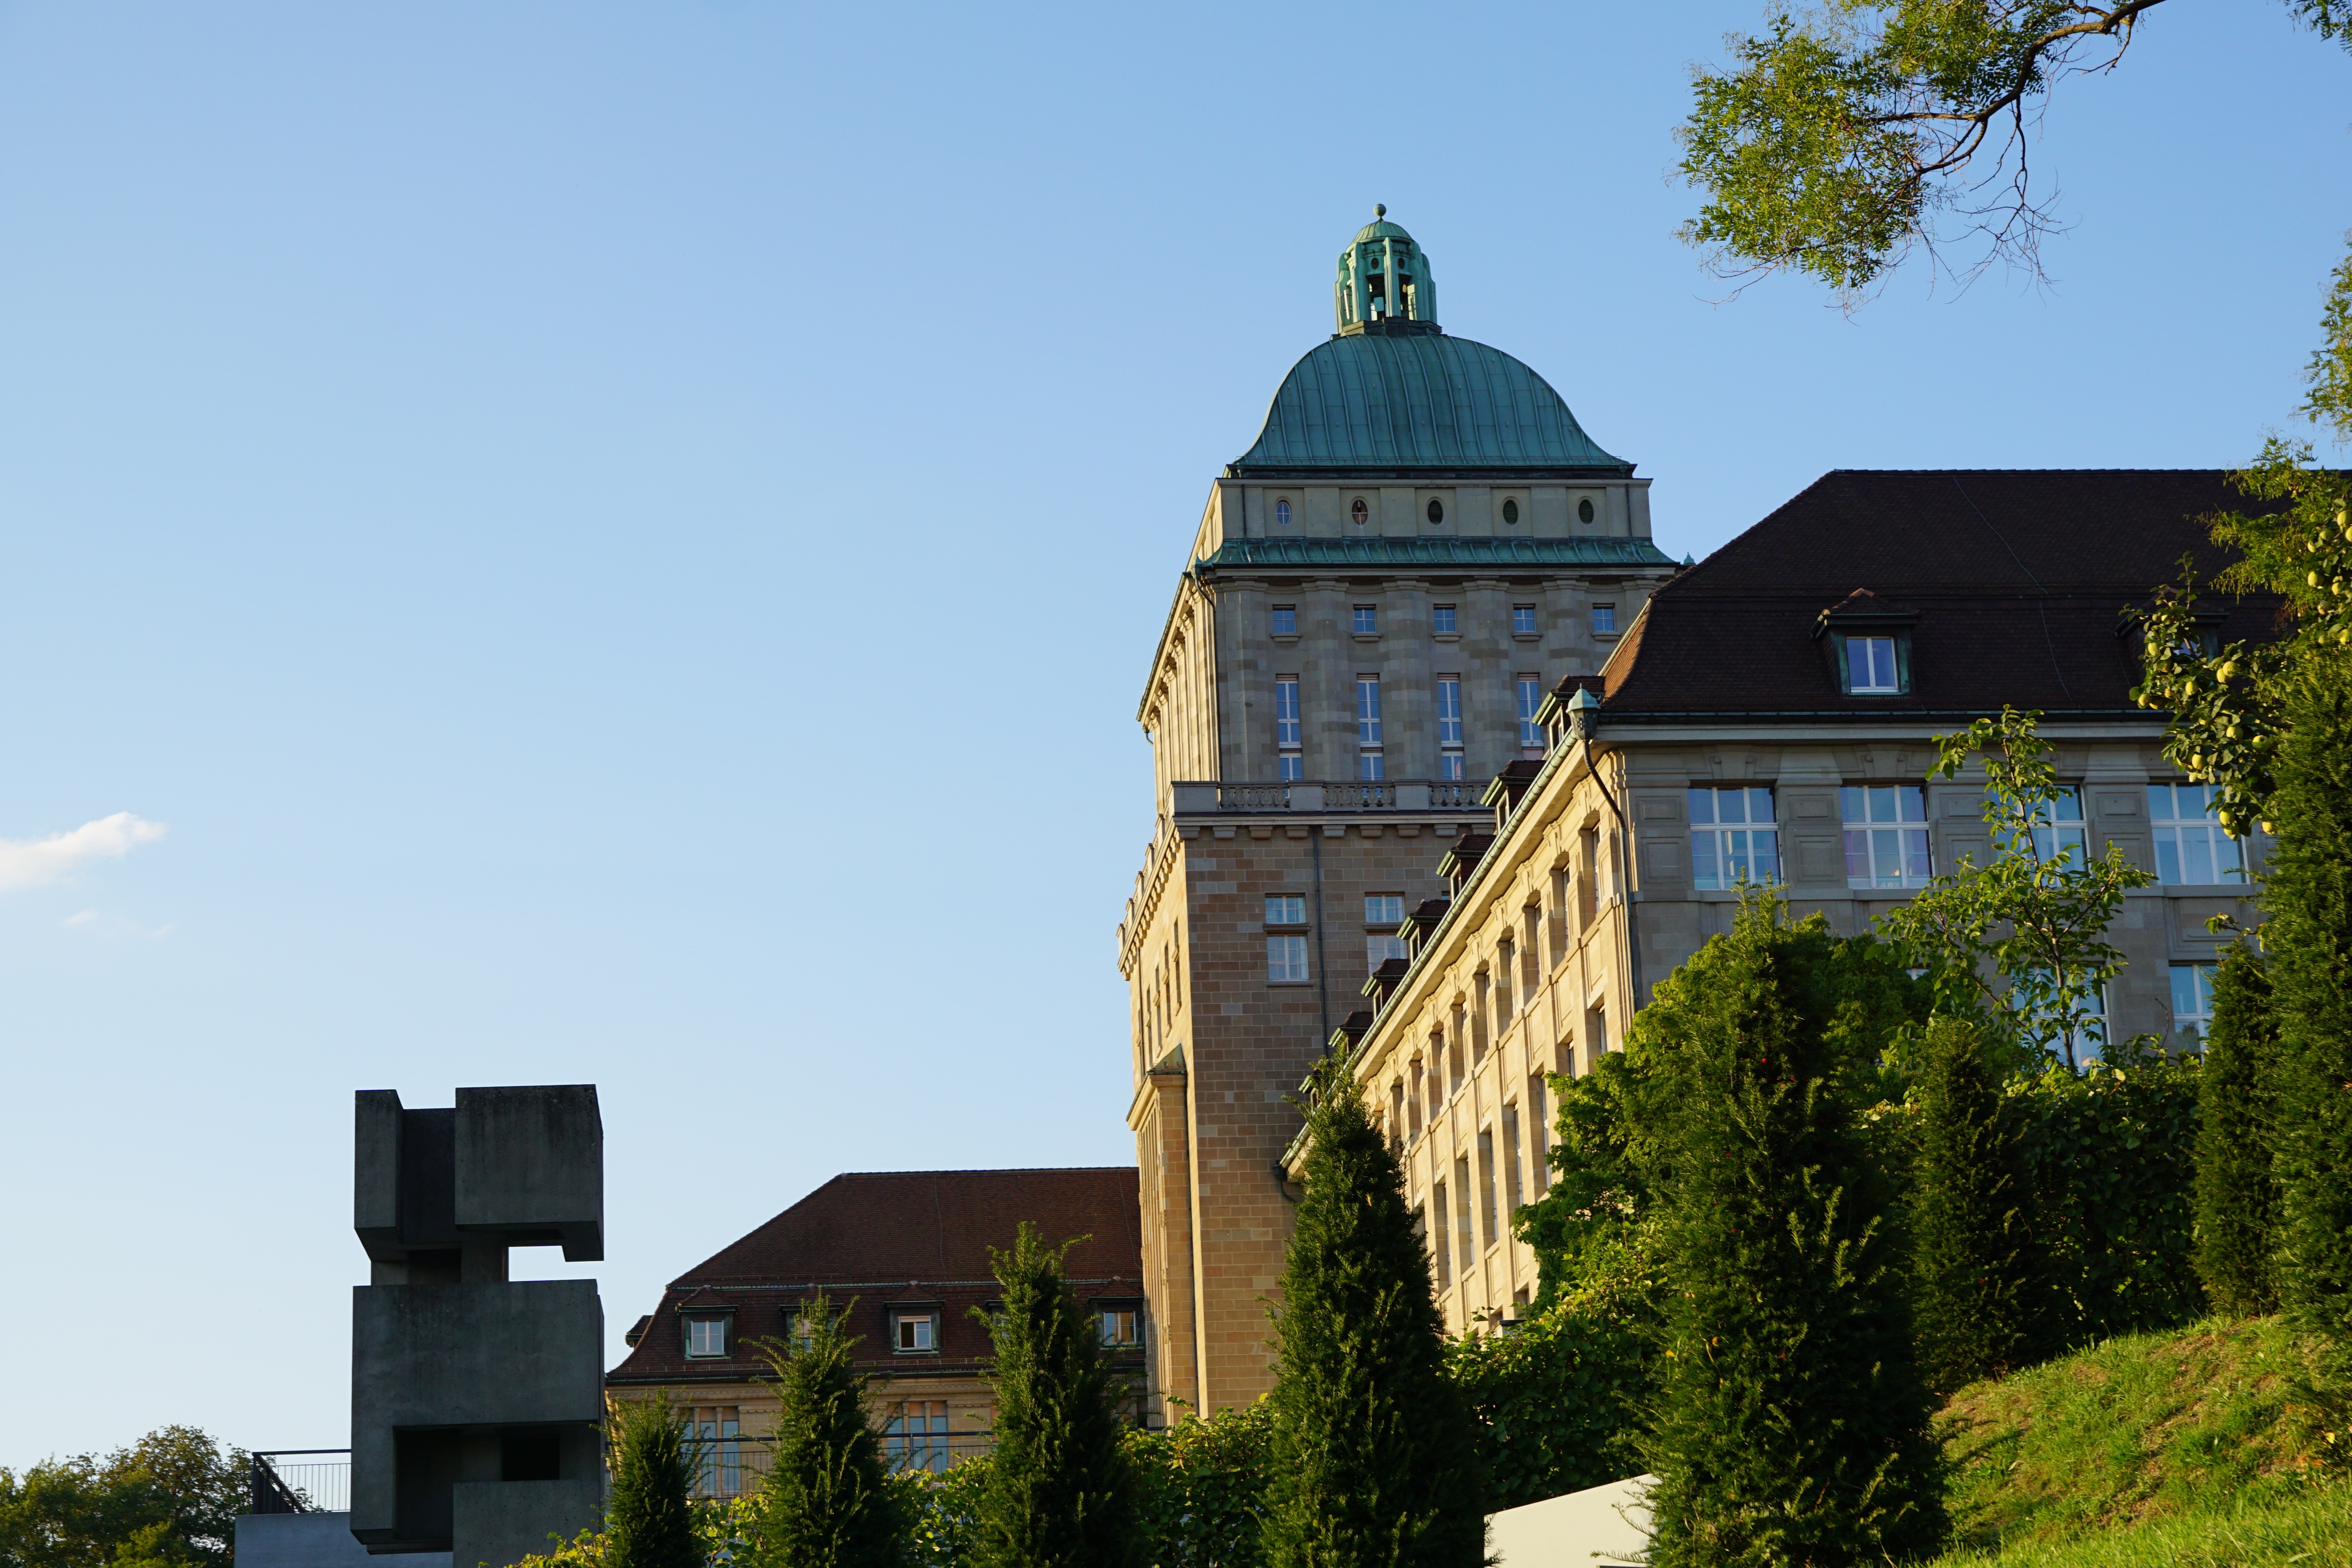 Zurich, Switzerland, Eth, University, building exterior, architecture